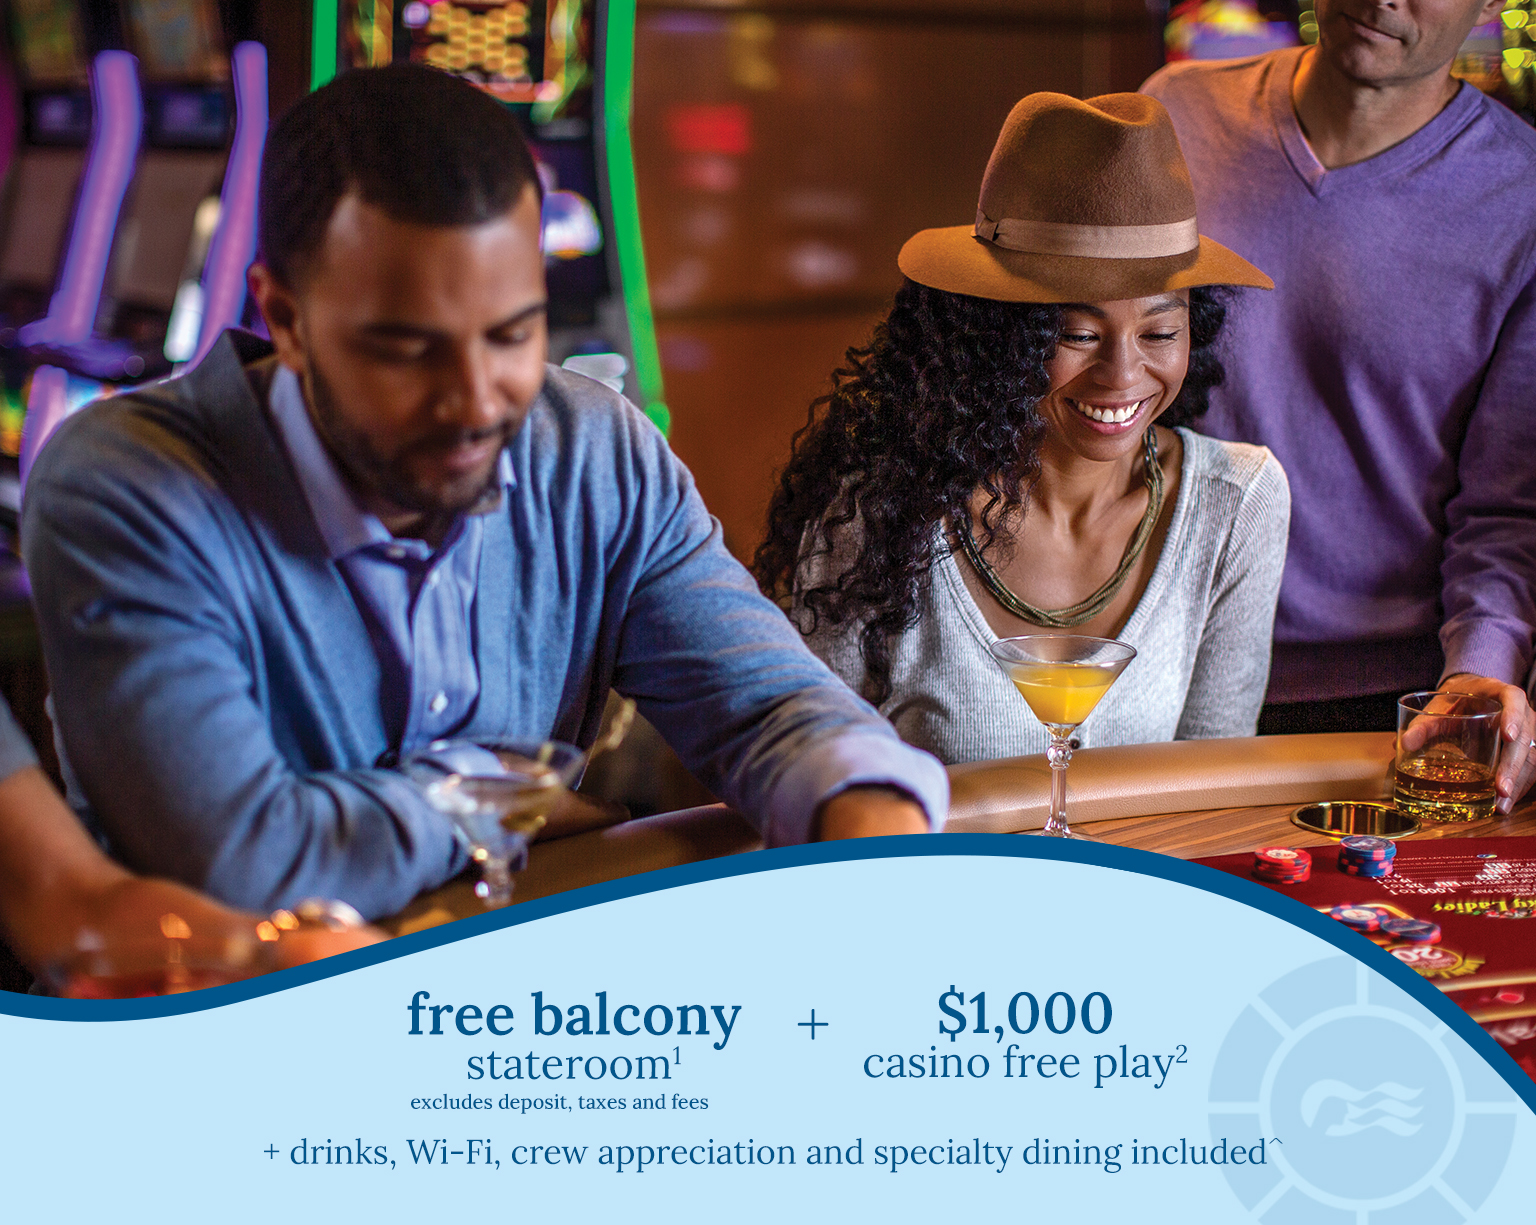 free balcony stateroom1 + $1000 casino free play2